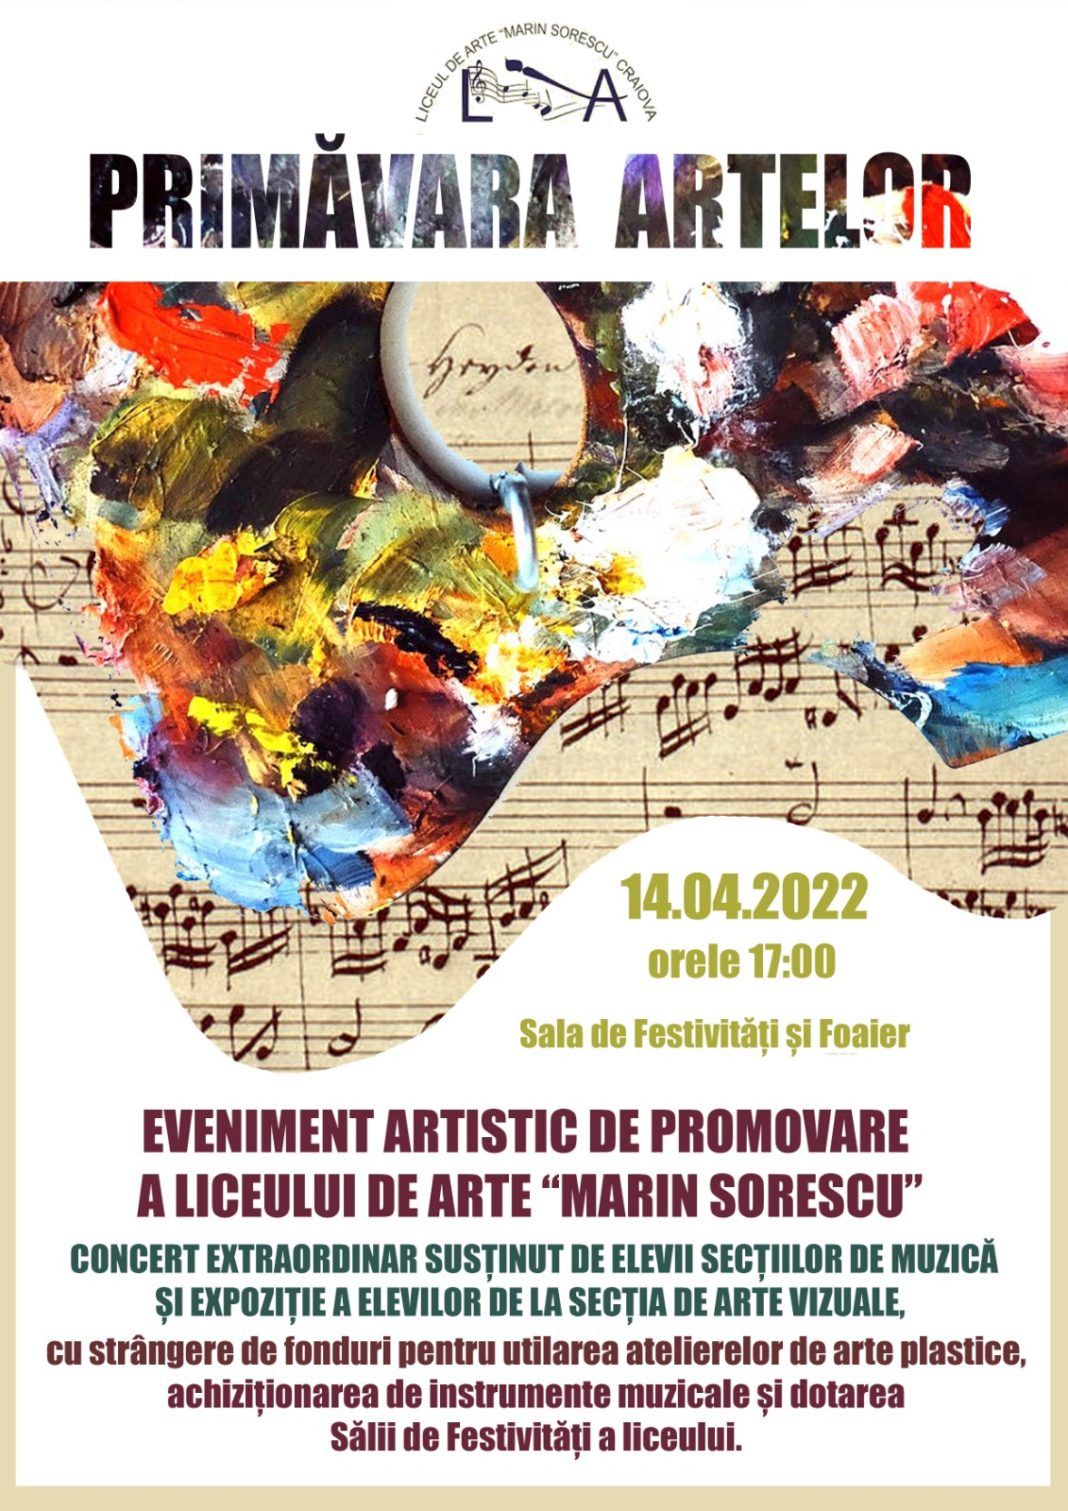 Concert extraordinar cu strângere de fonduri, la Liceul de Arte din Craiova